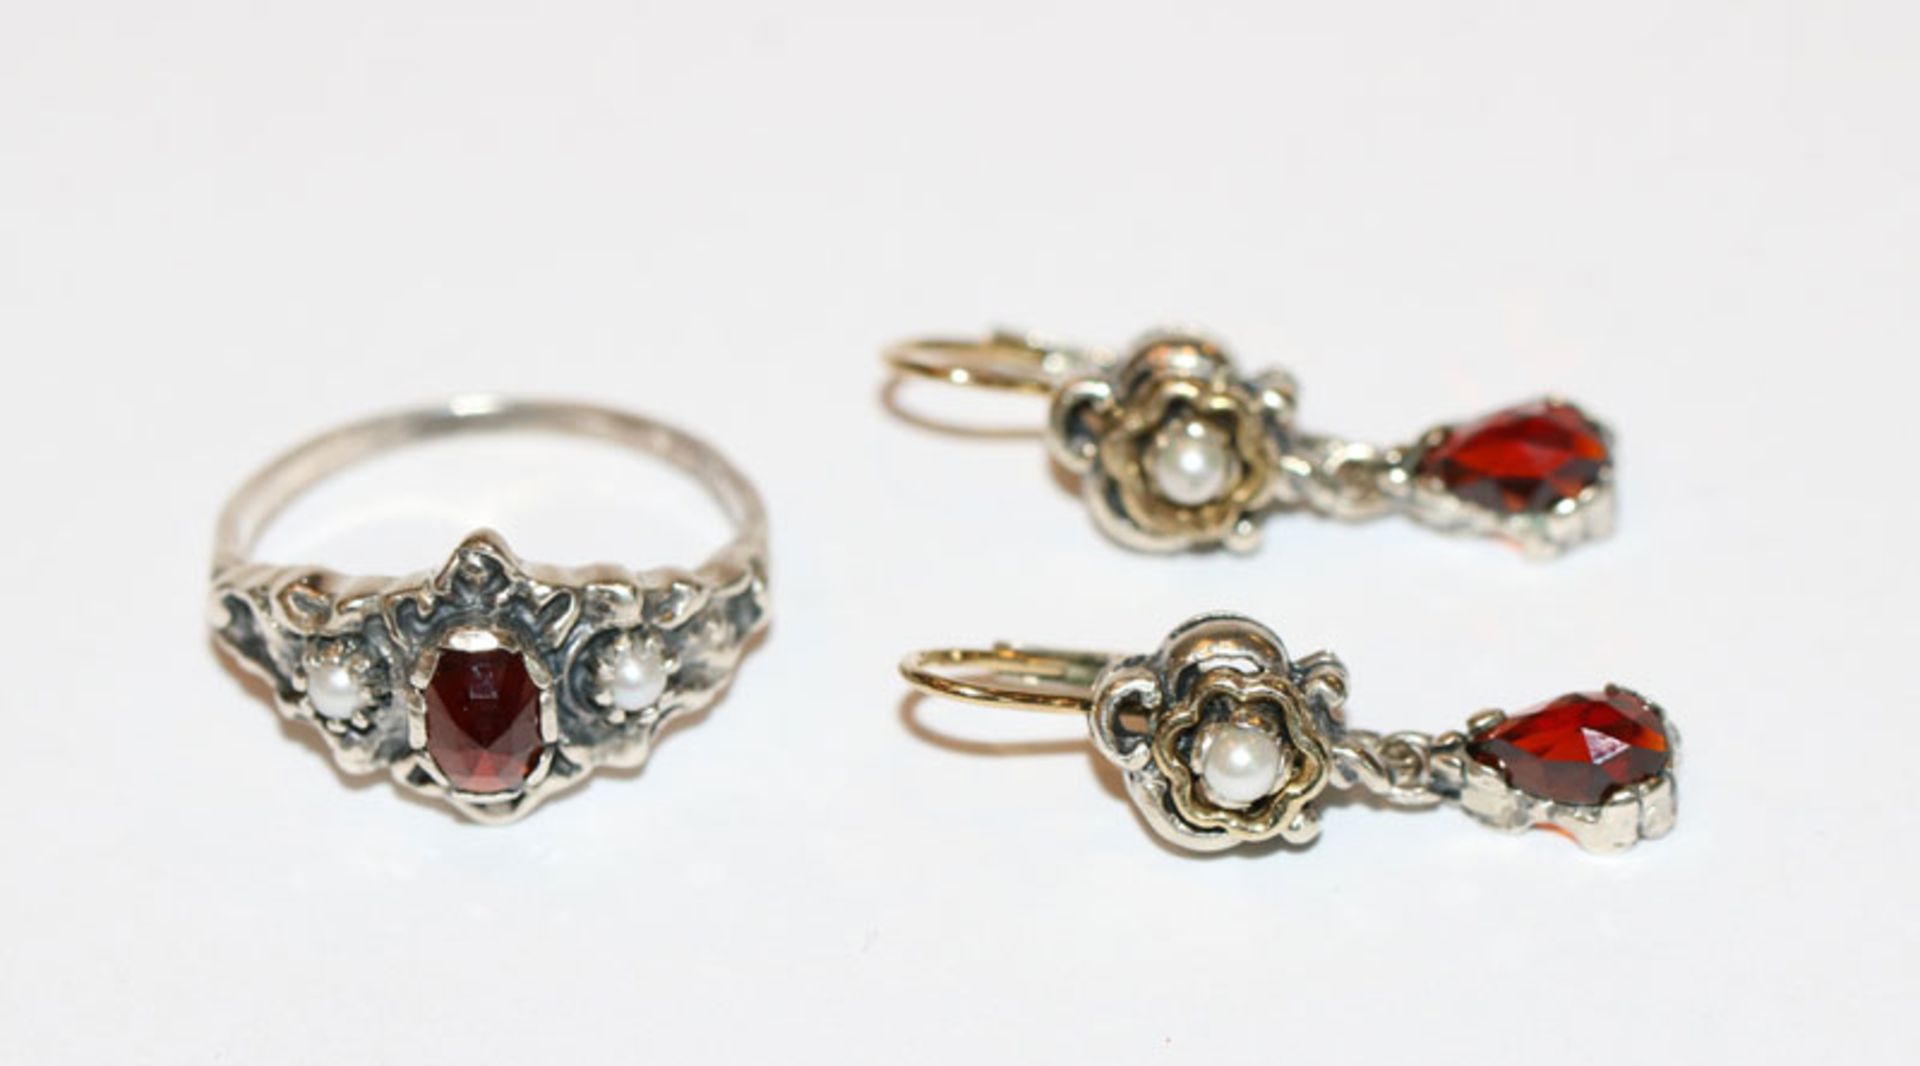 Silber Schmuck-Set, Paar Ohrhänger mit Granat und Perle, L 2,5 cm und passender Ring, Gr. 55